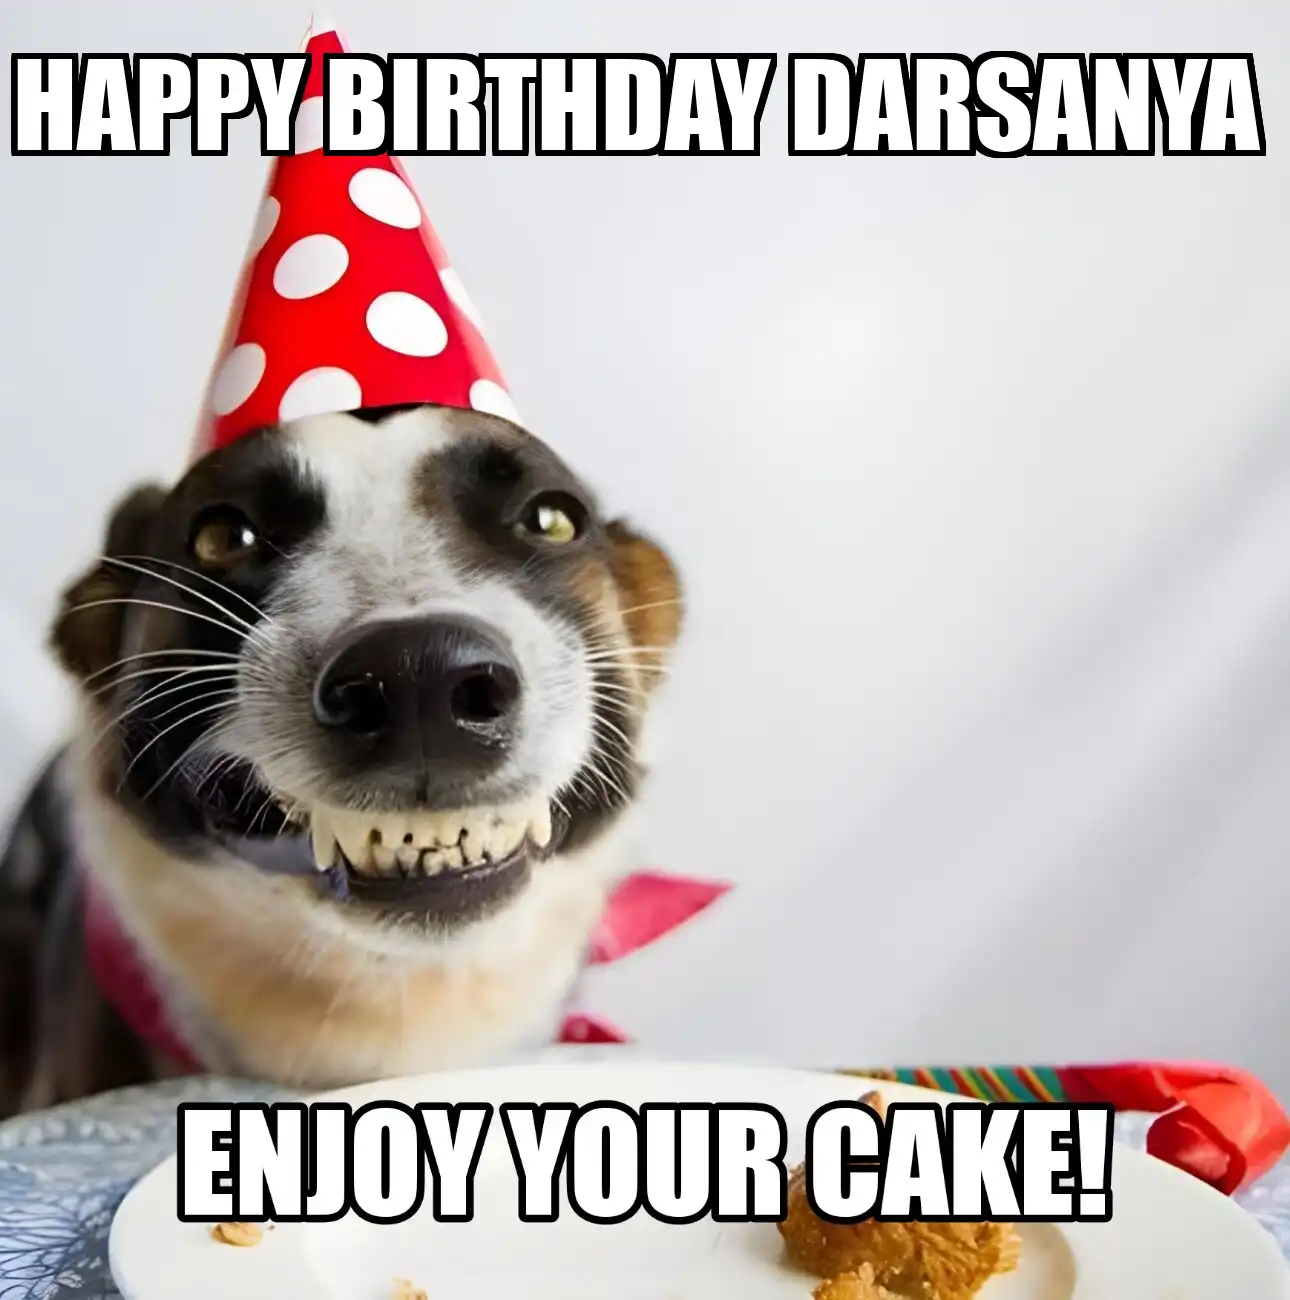 Happy Birthday Darsanya Enjoy Your Cake Dog Meme